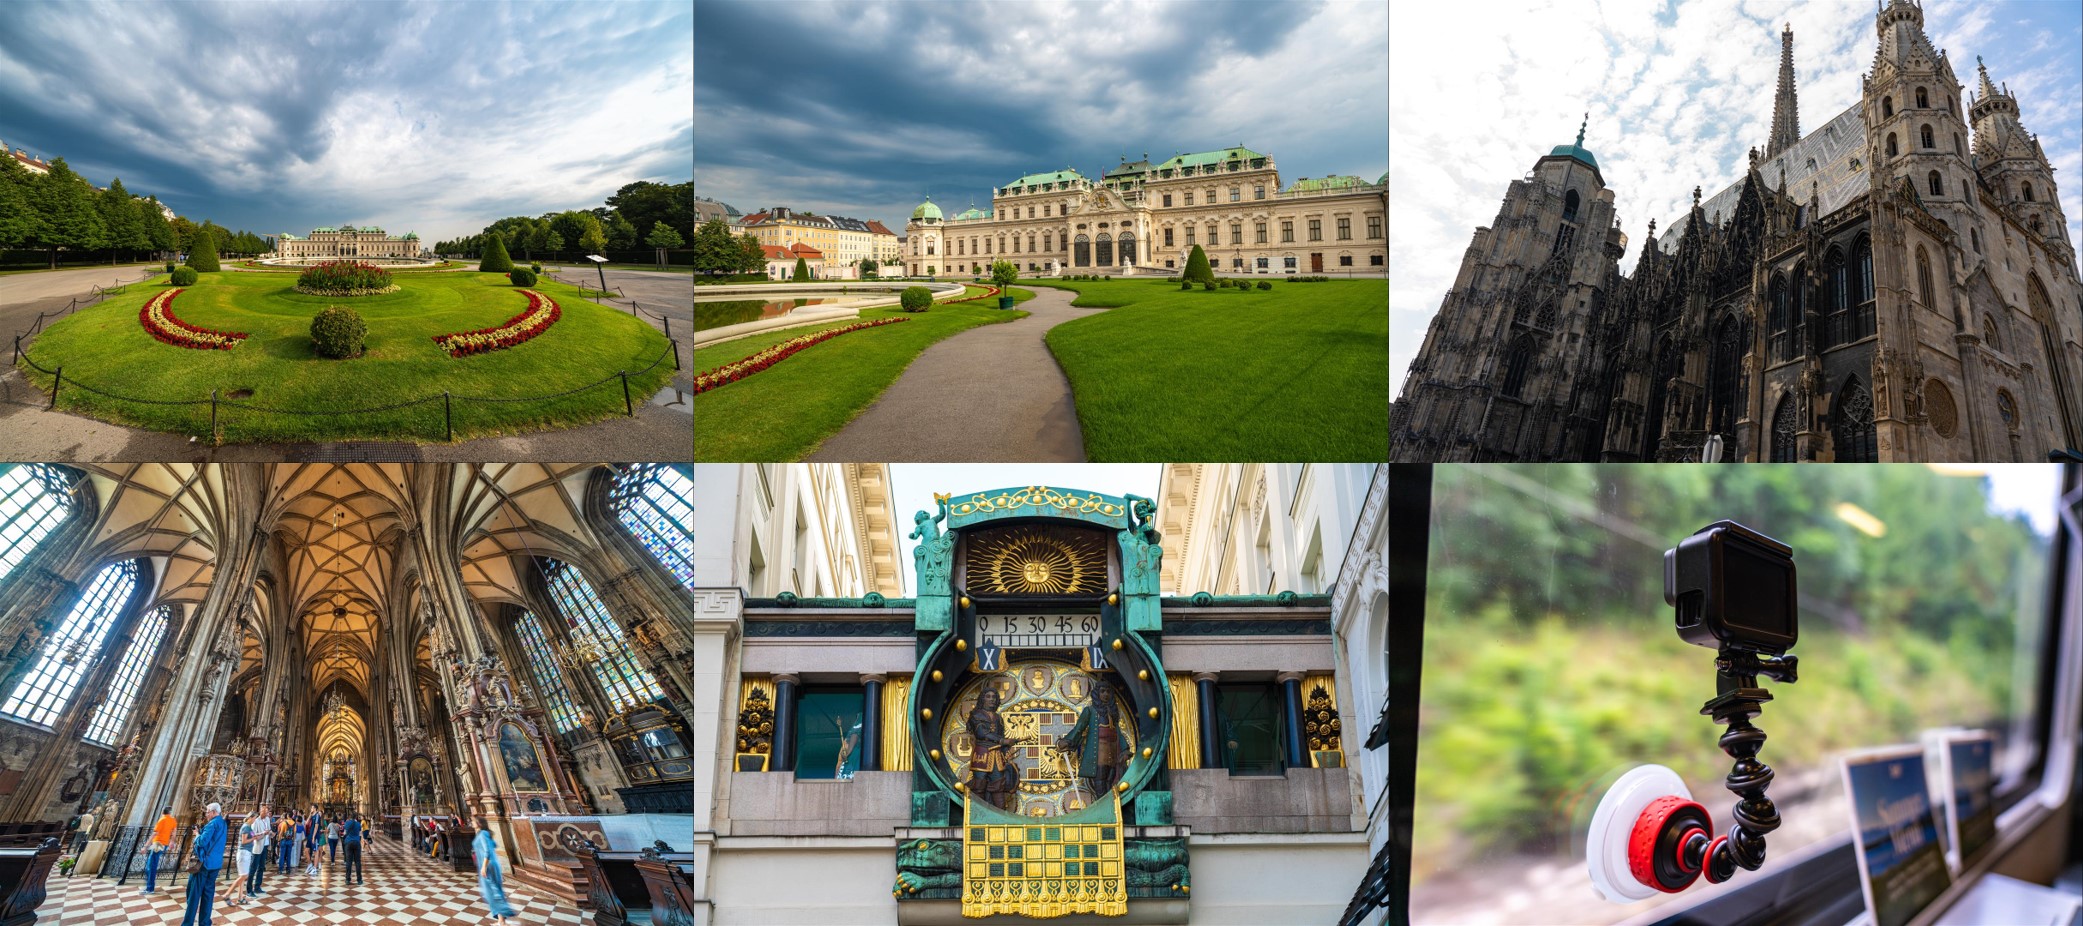 [2019 中歐攝影旅行] 奧、捷、斯、匈 14 天攝影旅行、路線、景點資訊整理